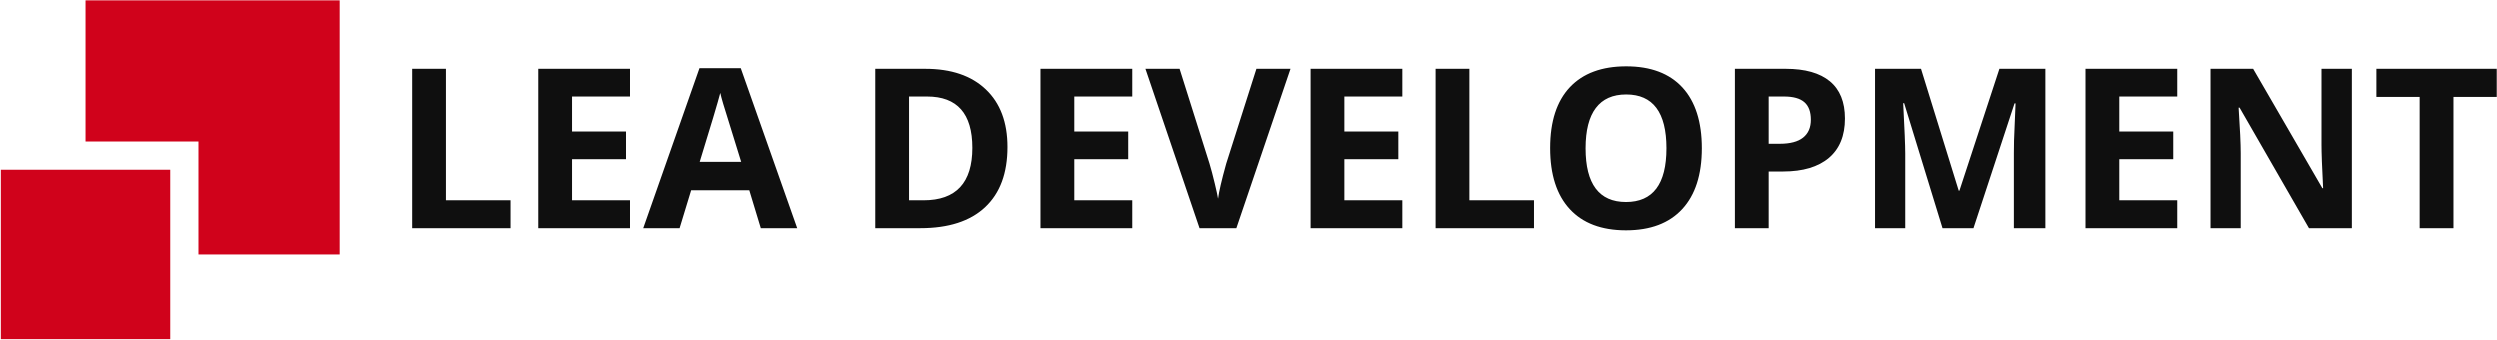 logo Lea Development